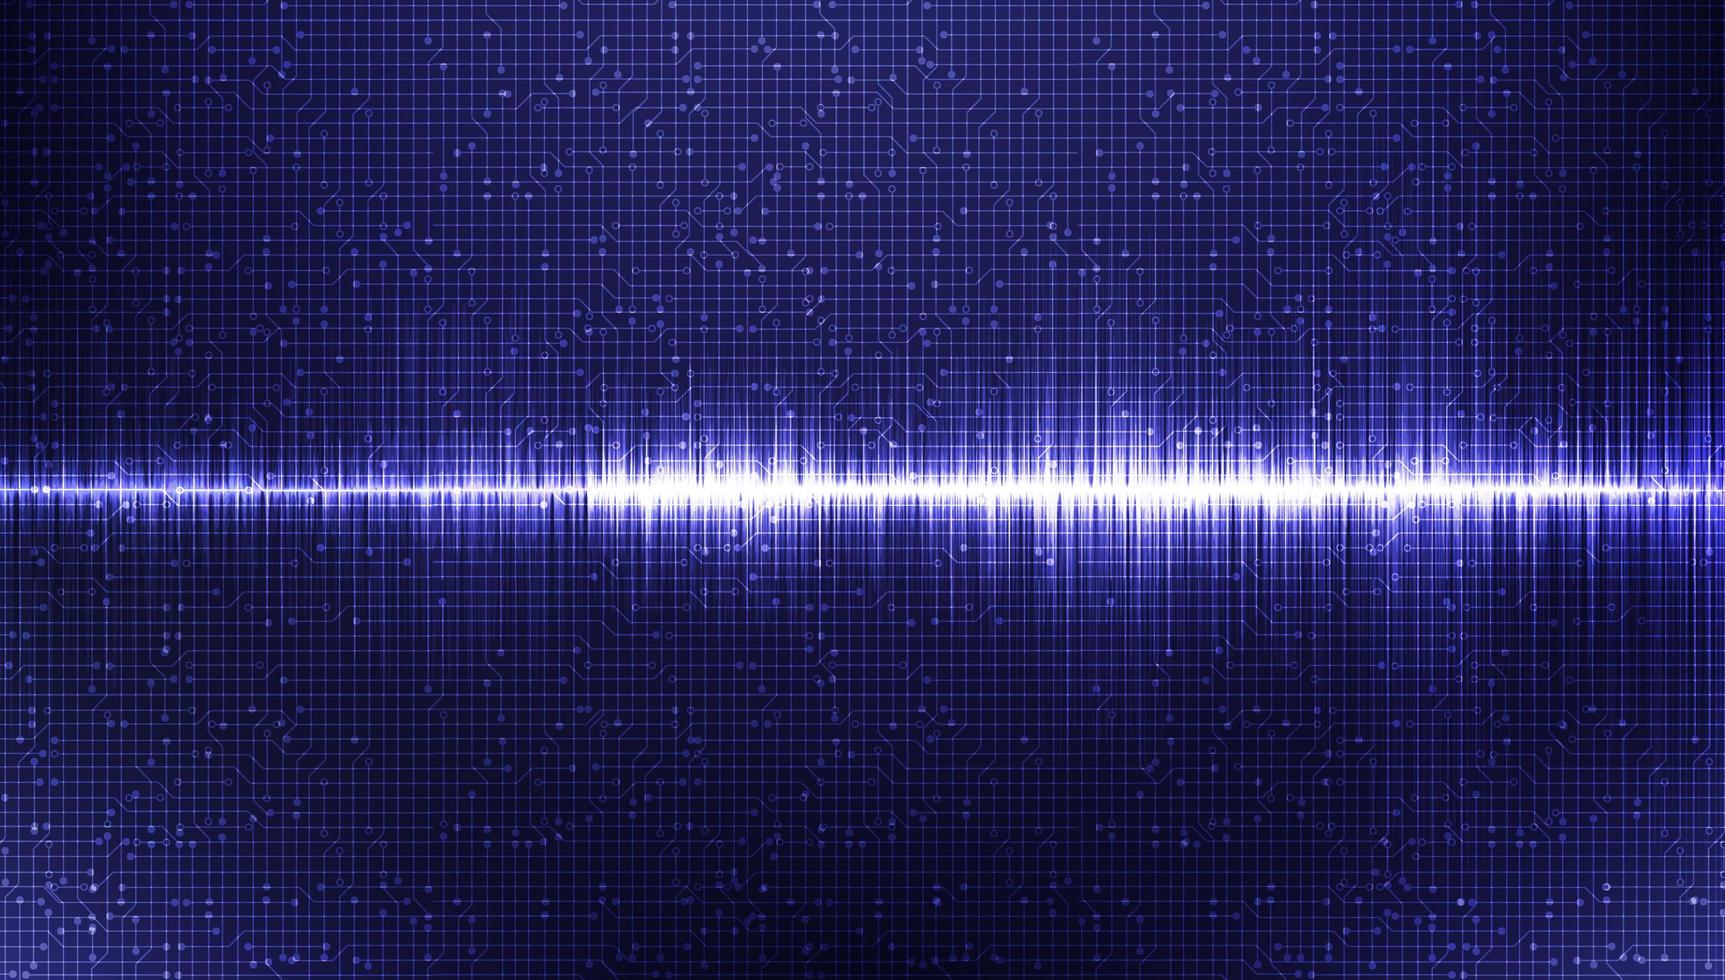 onda sonora elettronica scala richter bassa e alta su sfondo blu, concetto di diagramma digitale e sismico, design per studio musicale e scienza, illustrazione vettoriale. vettore